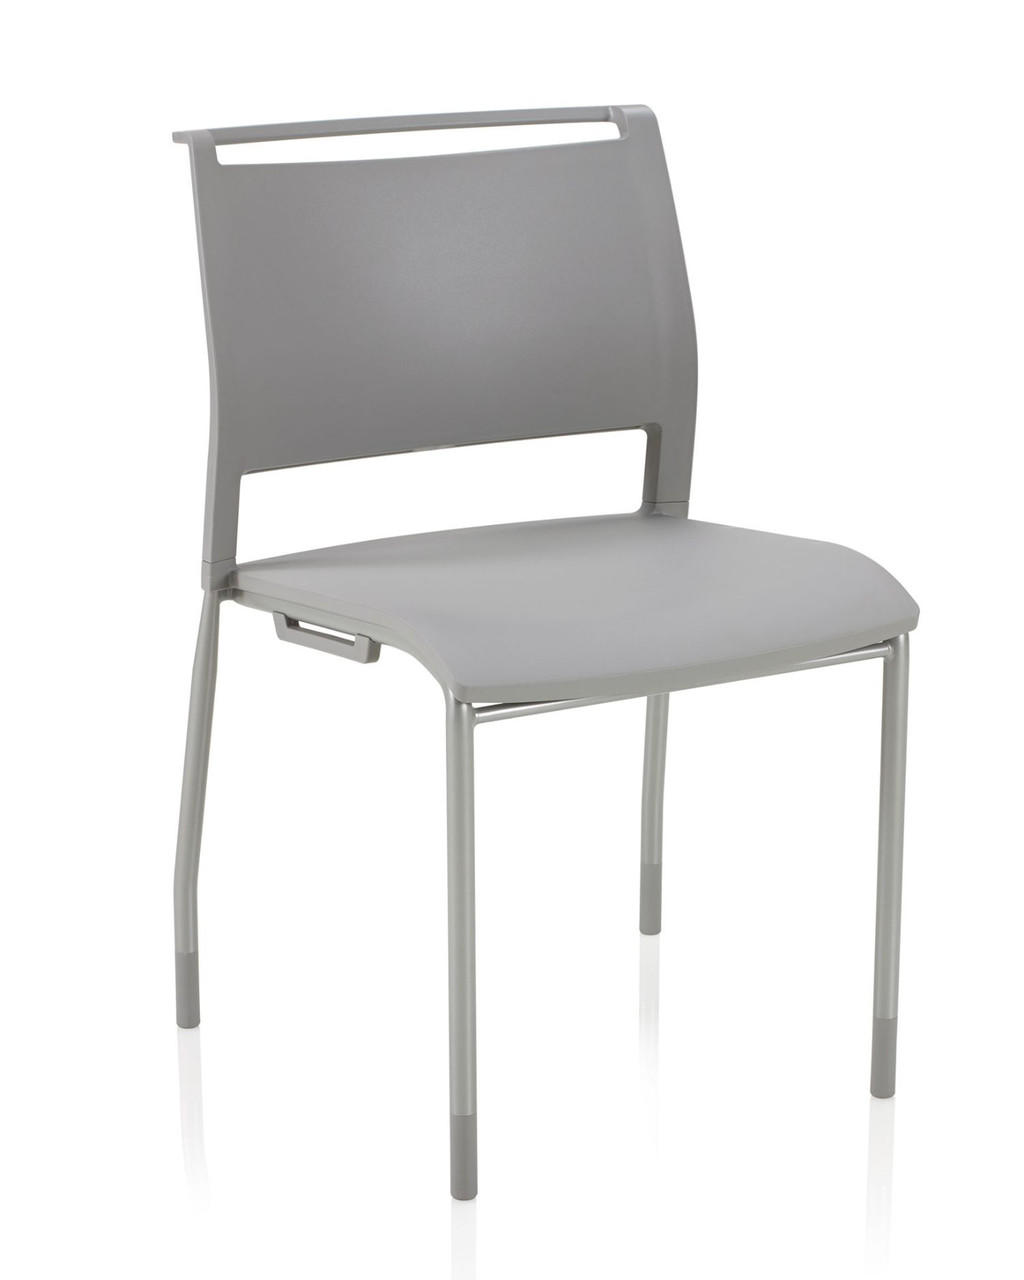 KI Furniture and Seating KI Opt4 Armless Stack Chair 